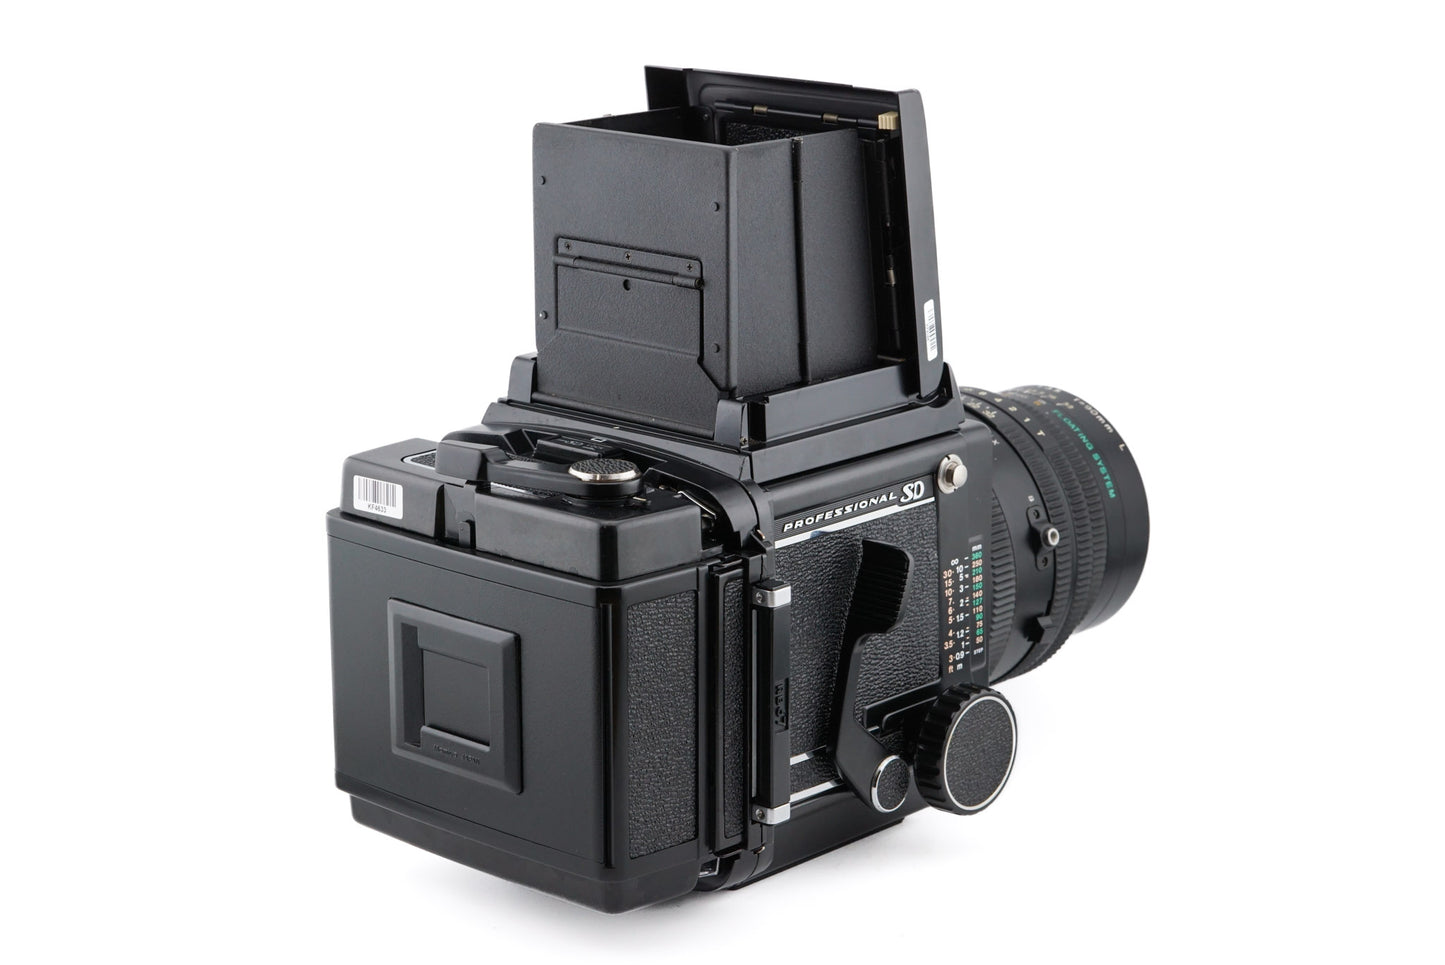 Mamiya RB67 Pro SD + 90mm f3.5 K/L L + 120 Pro-SD 6x7 Film Back + Waist Level Finder